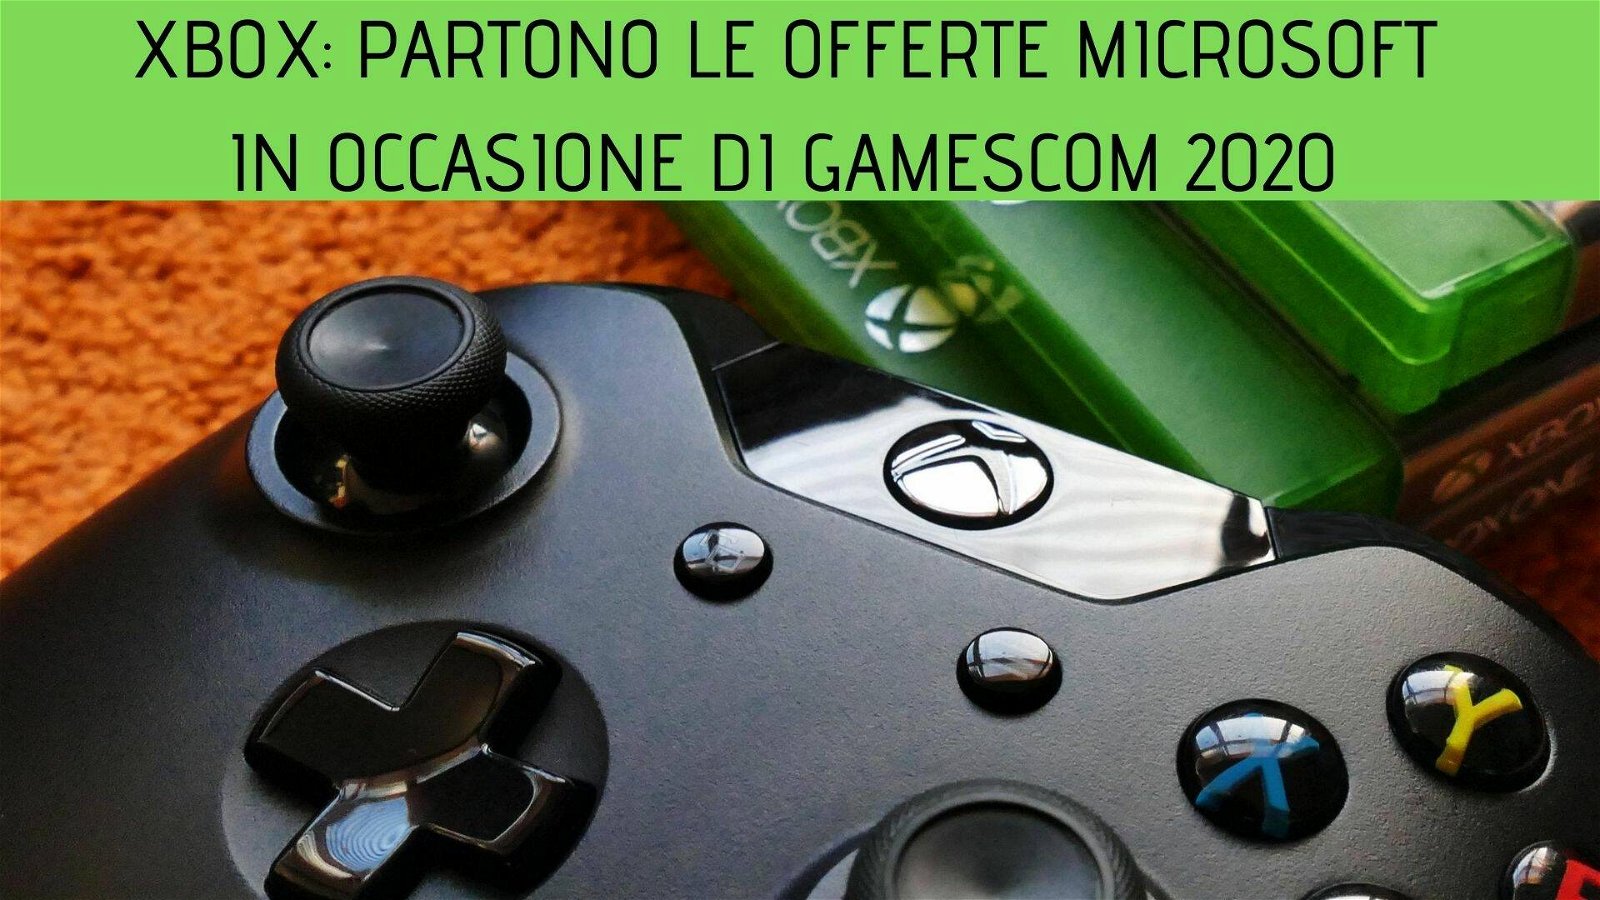 Immagine di Xbox: partono le offerte Microsoft in occasione di Gamescom 2020